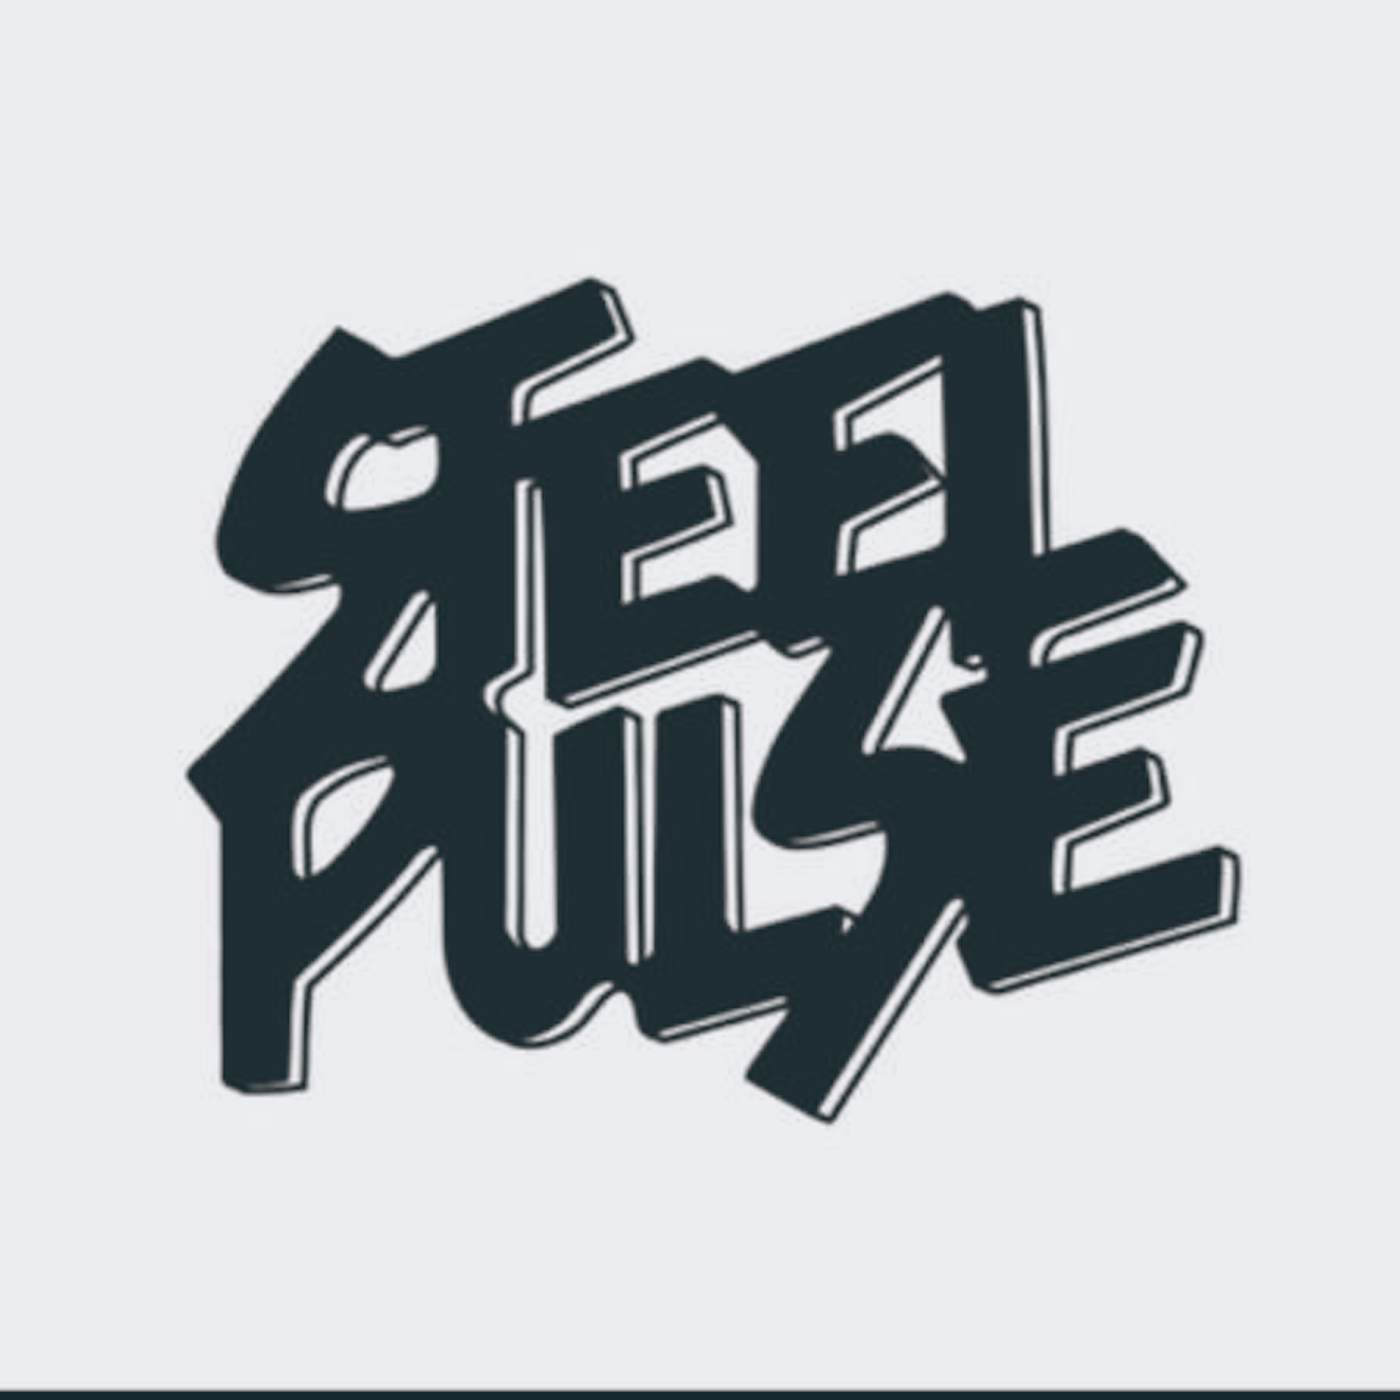 Steel Pulse